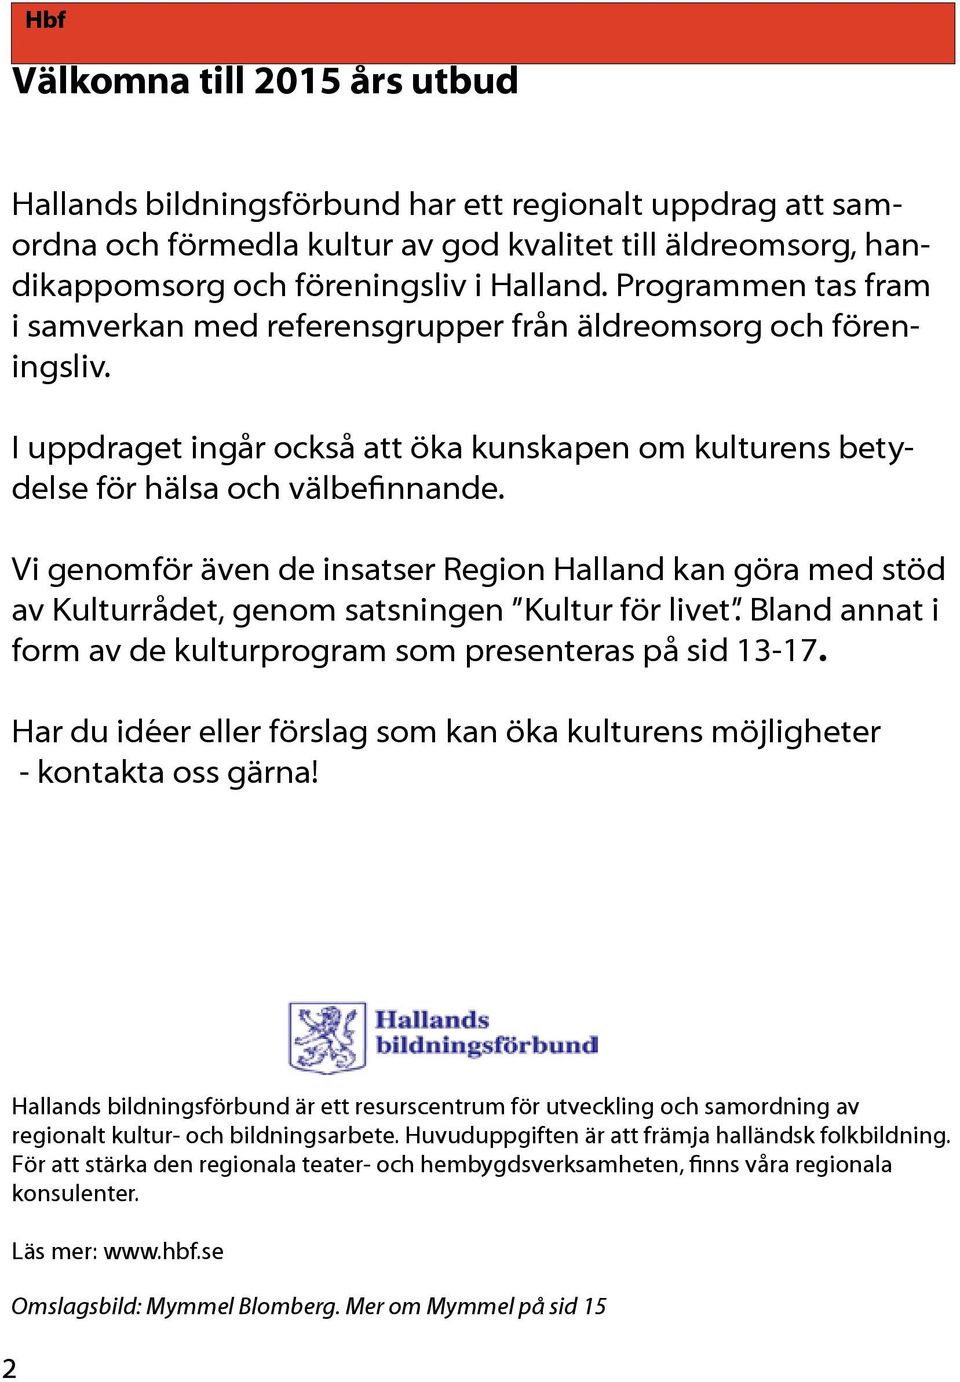 Vi genomför även de insatser Region Halland kan göra med stöd av Kulturrådet, genom satsningen Kultur för livet. Bland annat i form av de kulturprogram som presenteras på sid 13-17.